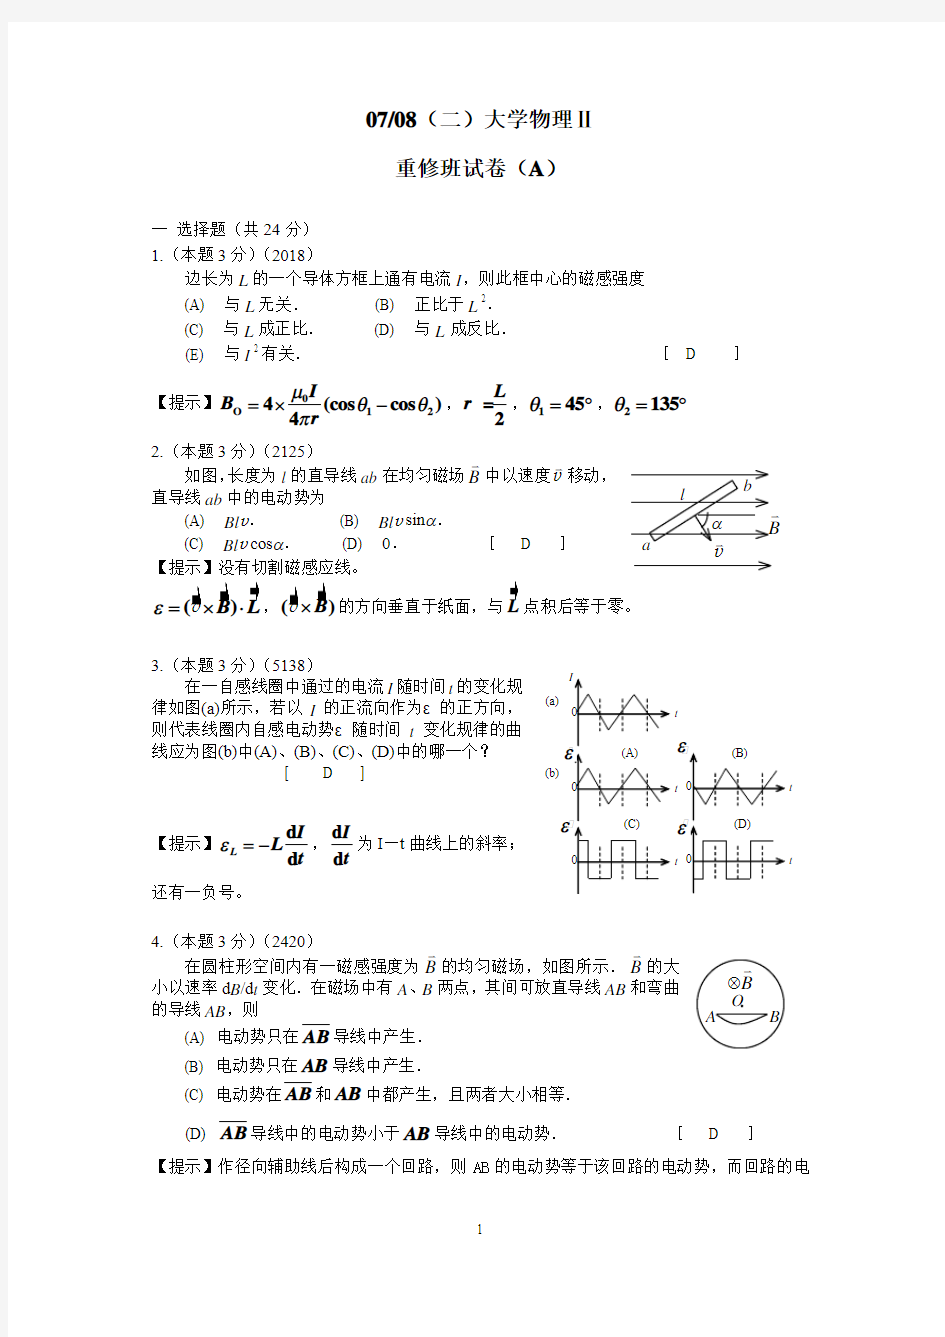 07-08(二)大学物理Ⅱ重修班试卷及解答 (1)